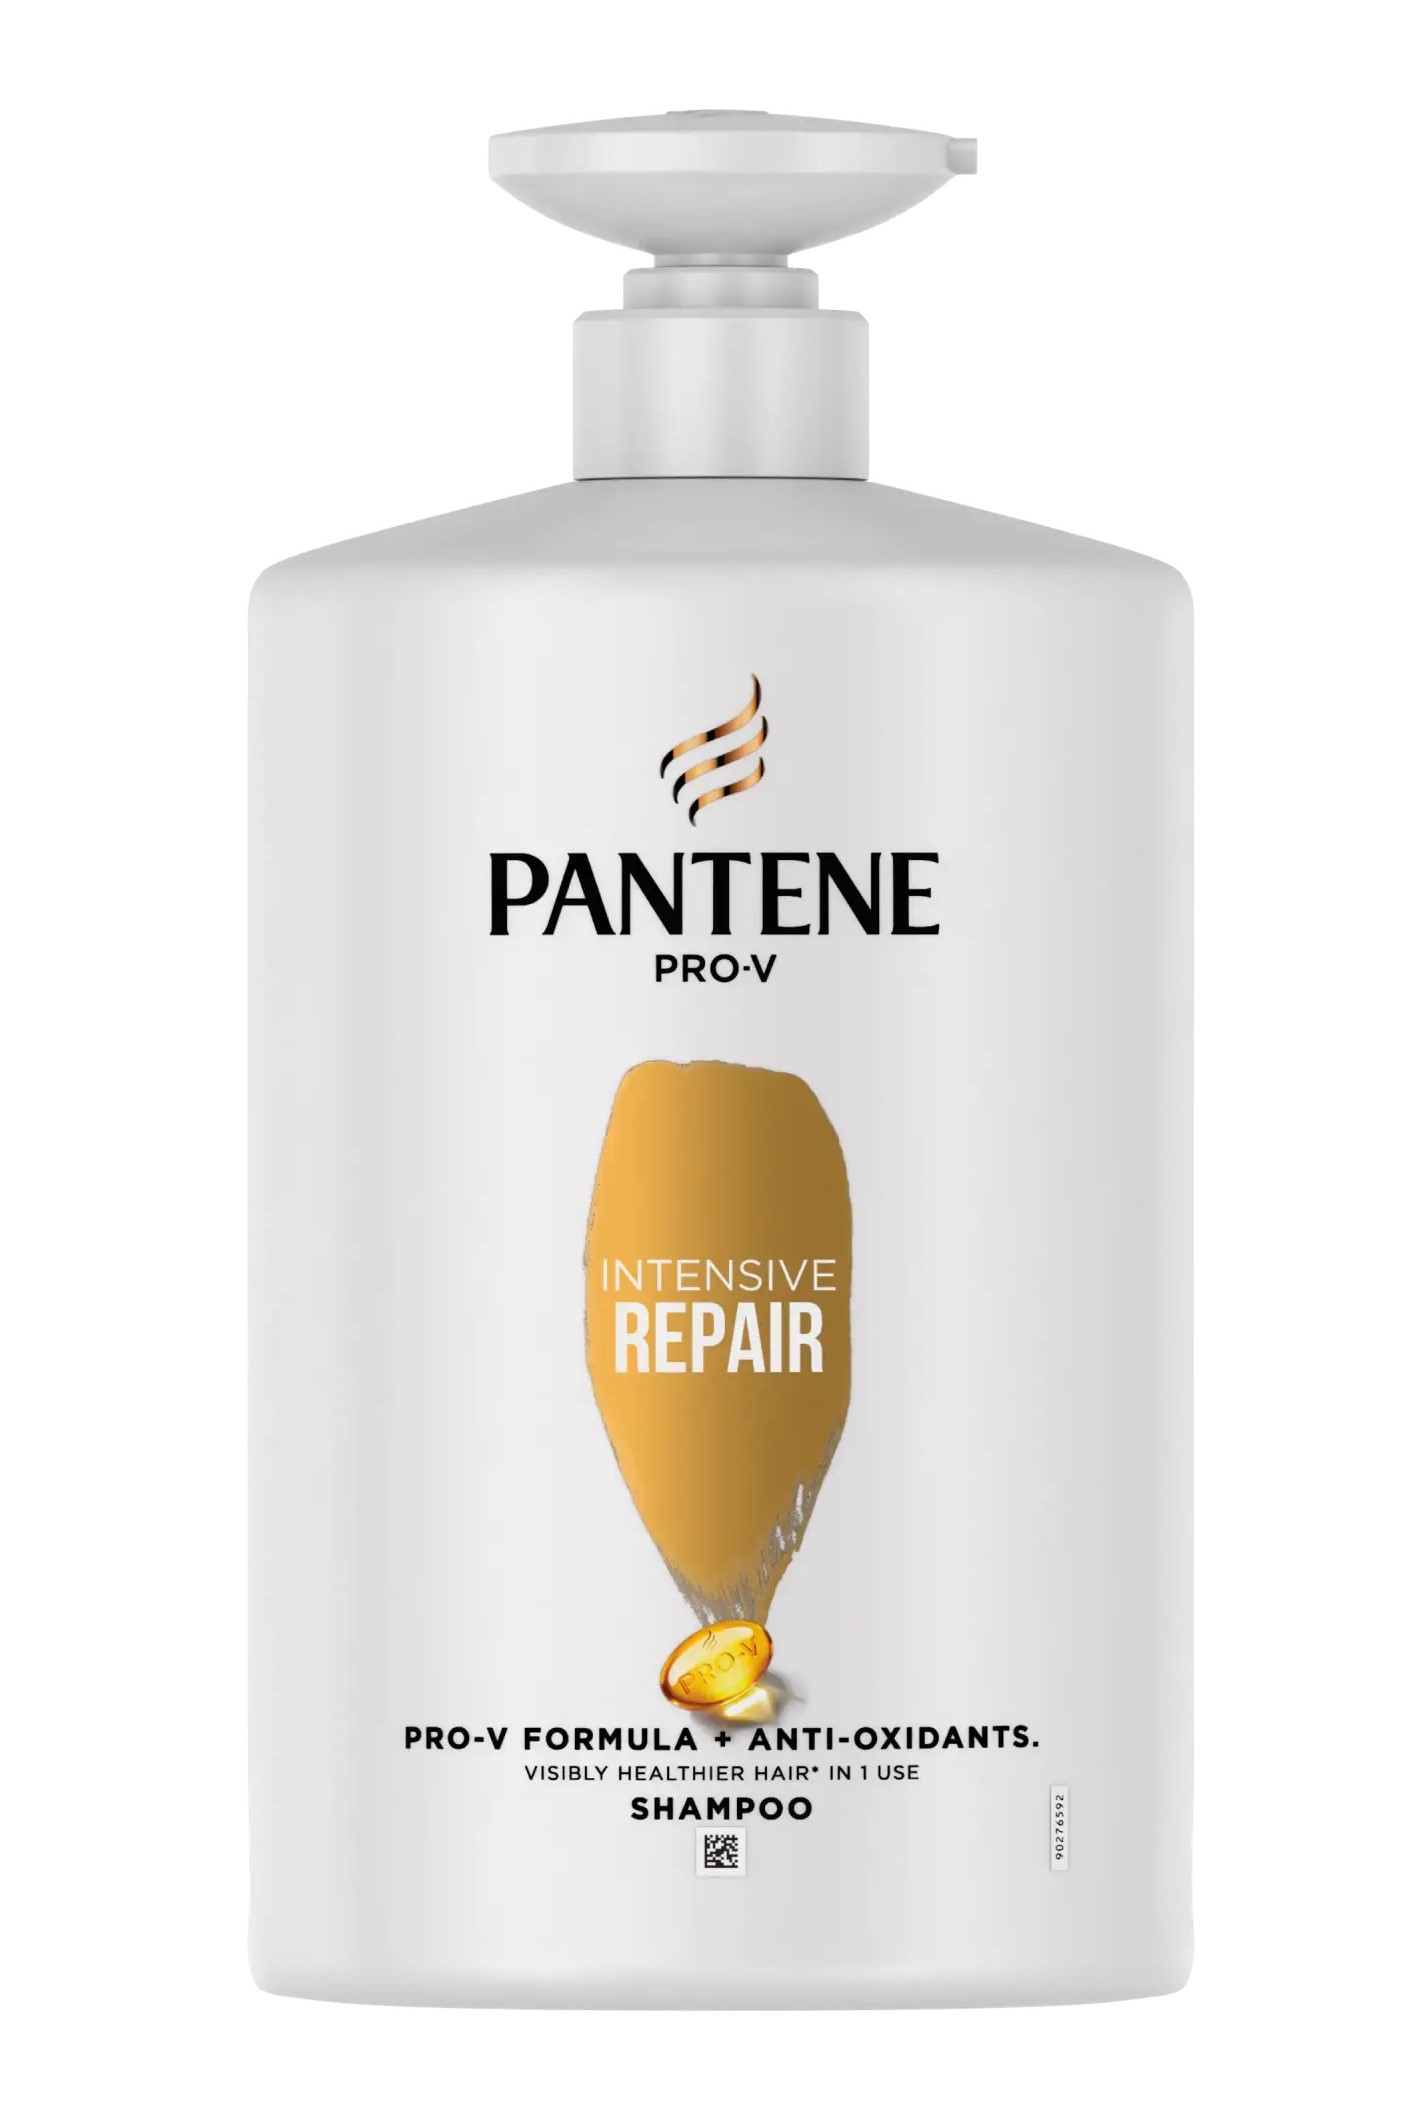 Pantene Pro-V šampon 1 l Intensive Repair